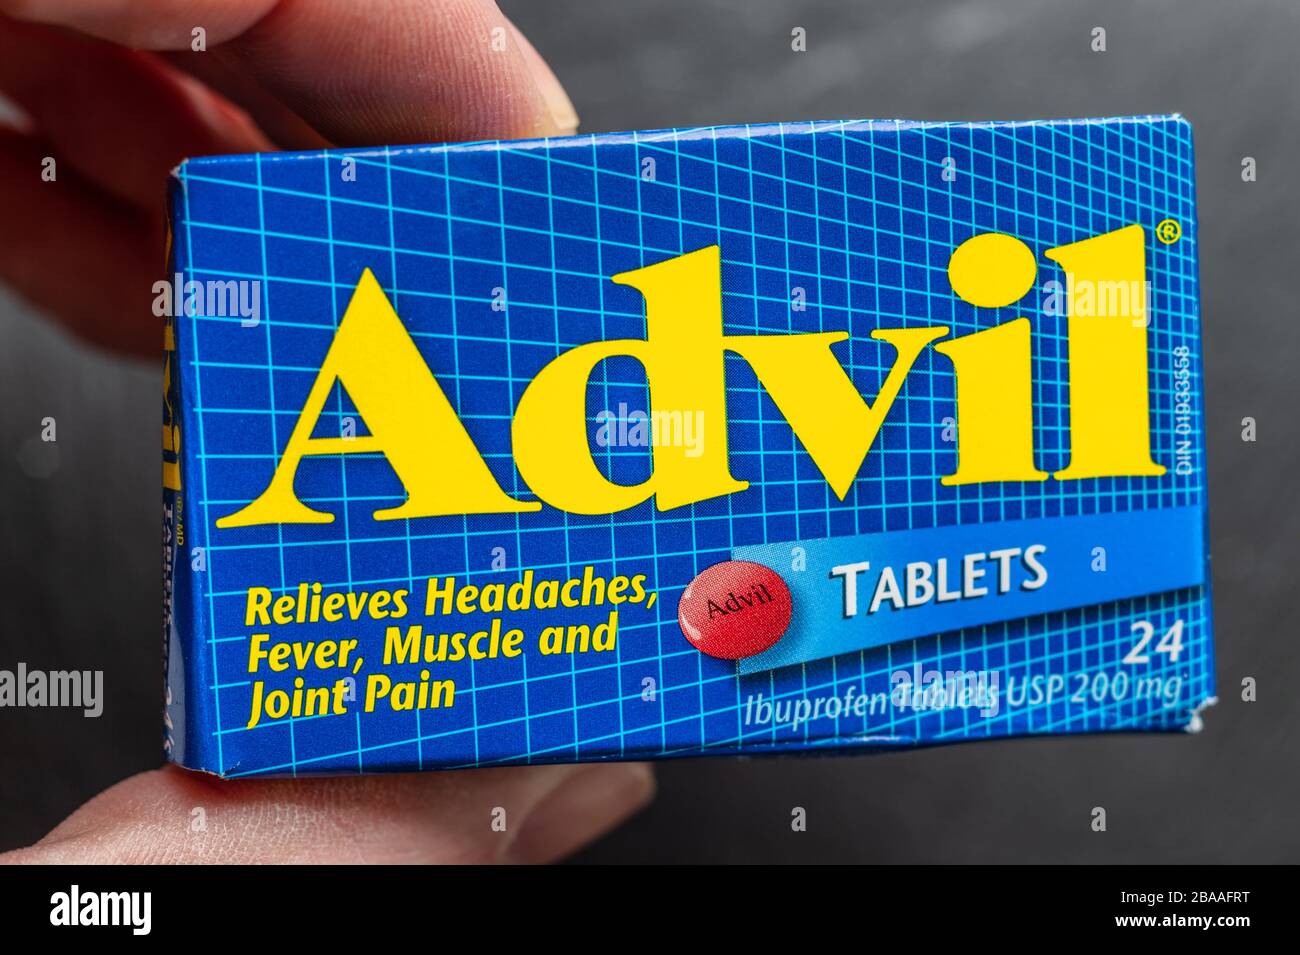 Montréal, CA 26 mars 2020: Tenue à la main d'une boîte de pilules Advil  Ibuprofen Photo Stock - Alamy